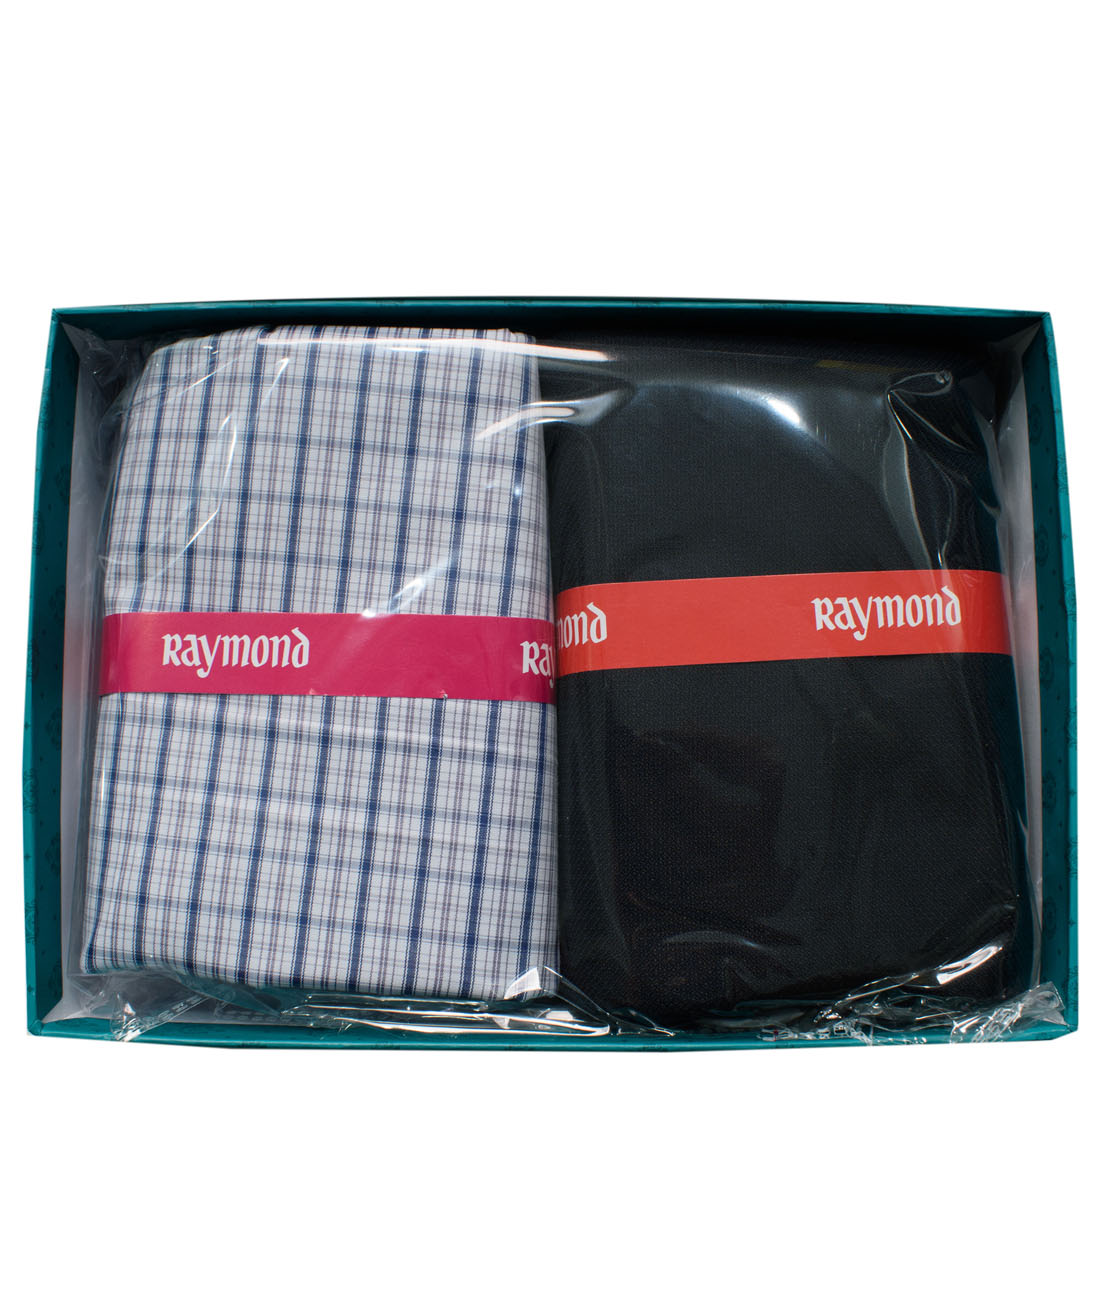 Raymond Pant Shirt Fabric combo Gift Pack MRP 899